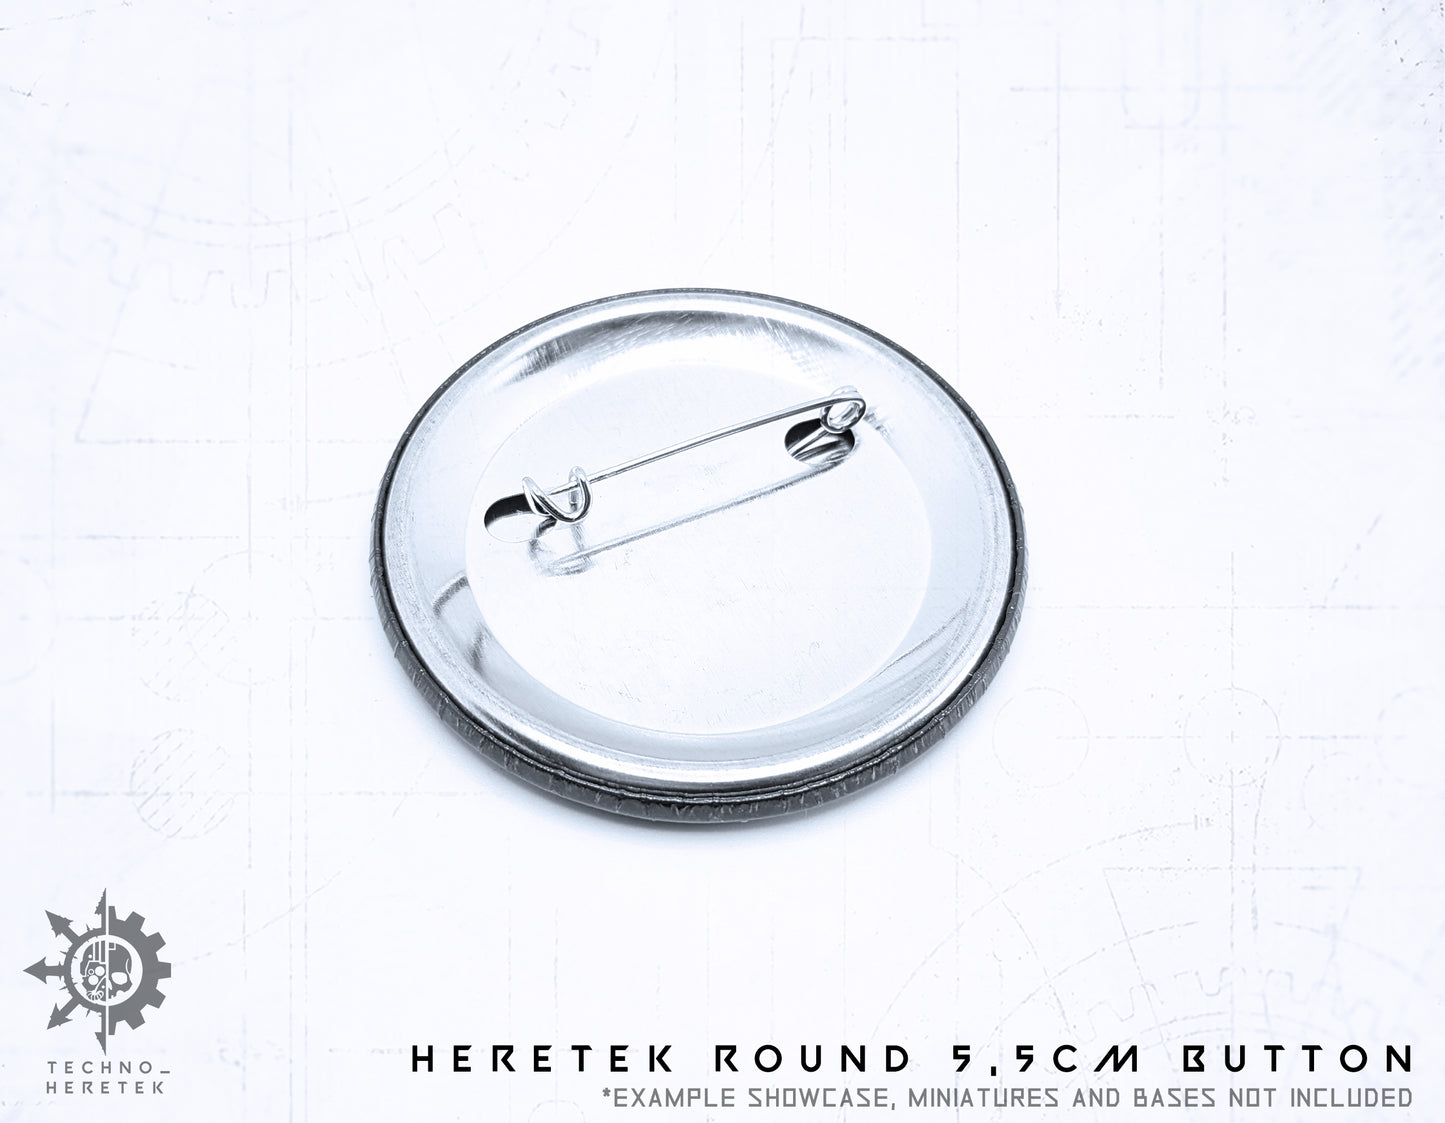 Techno_Heretek Round Button 5,5cm